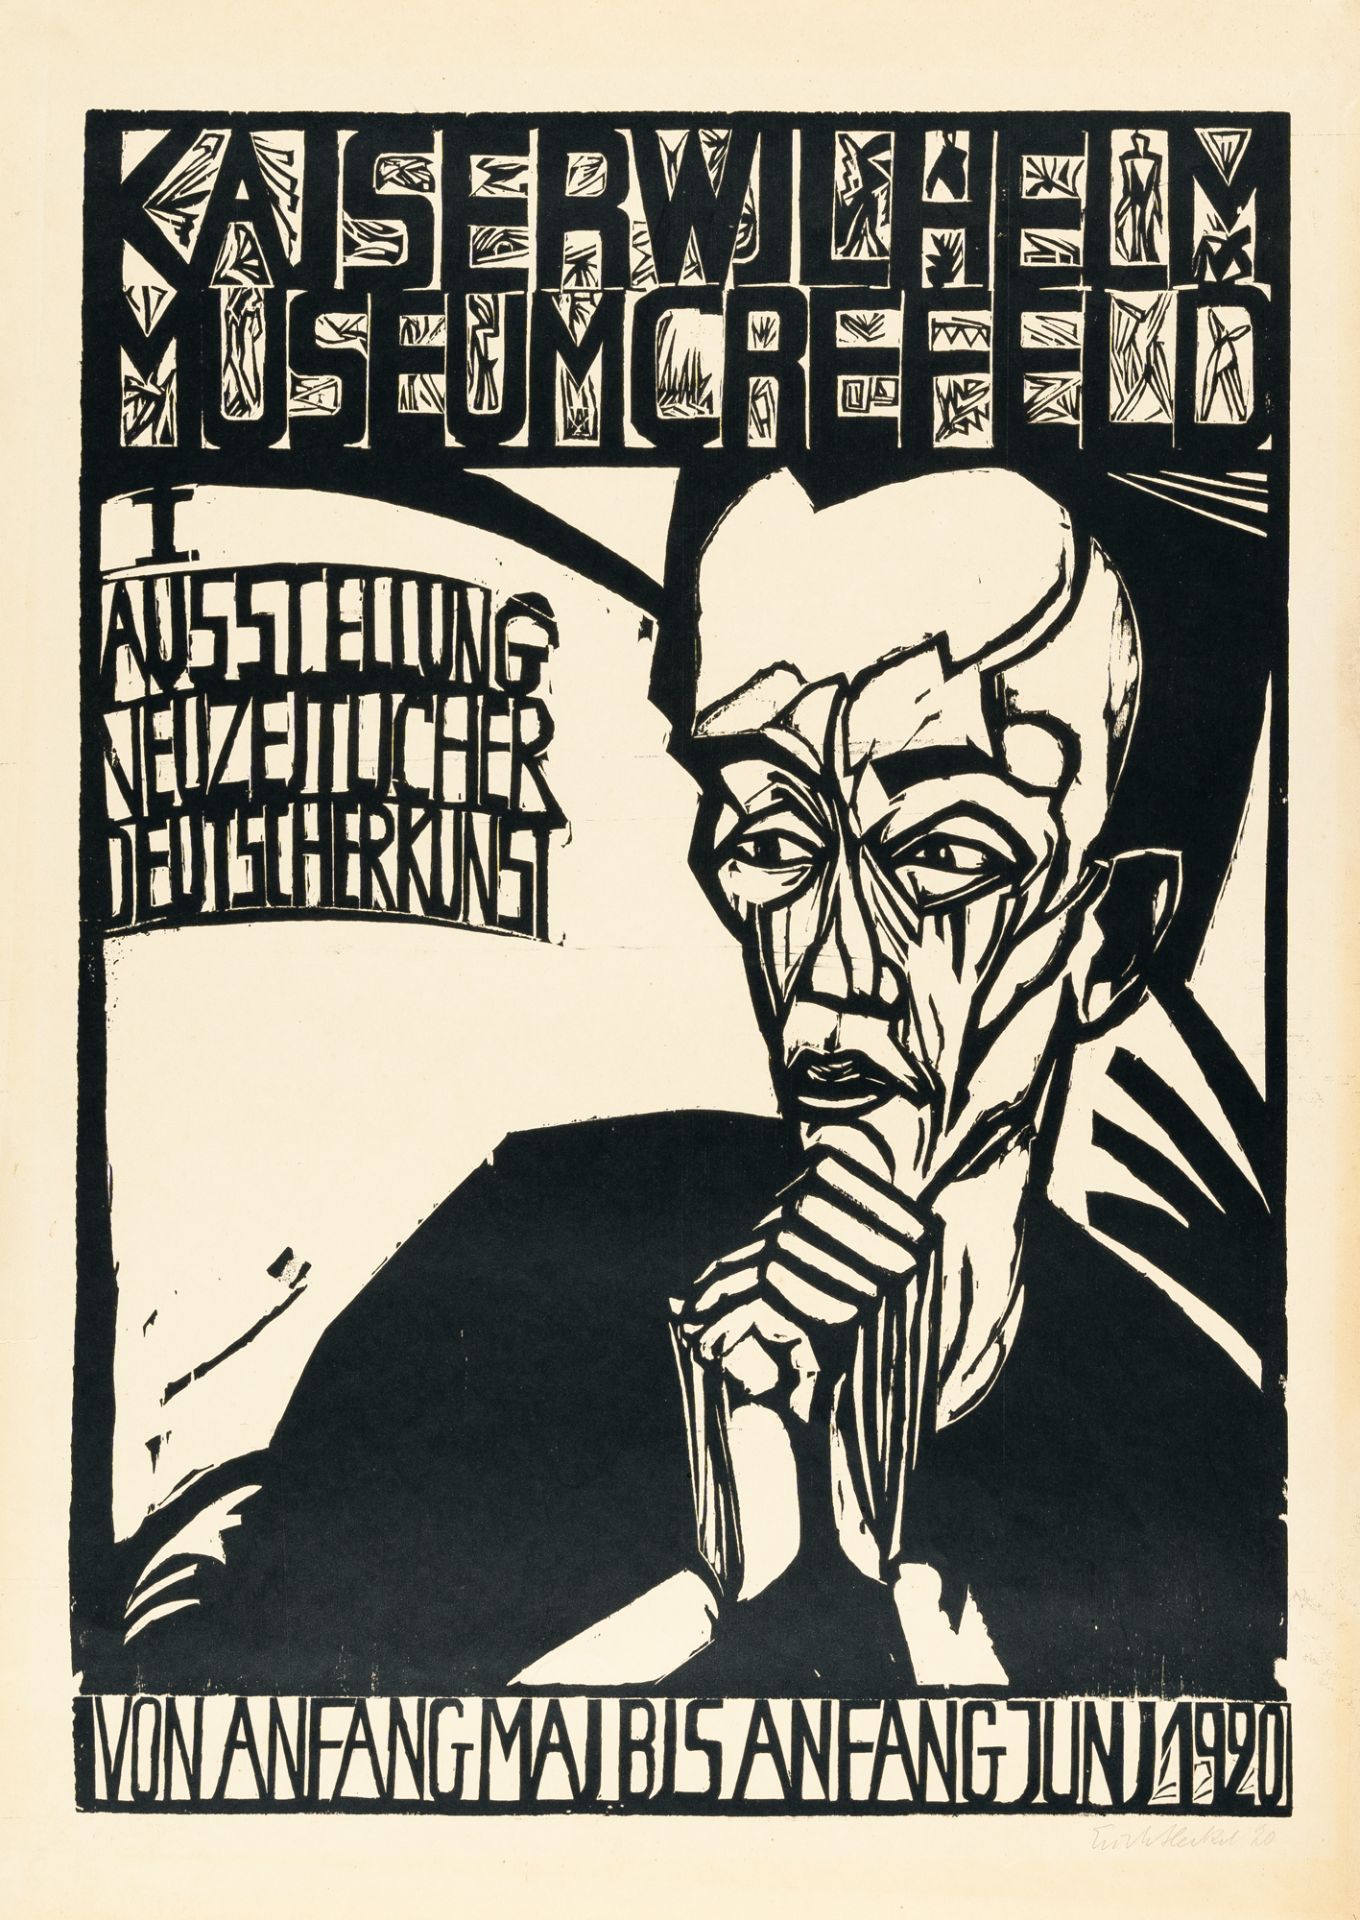 Erich Heckel (1883 Döbeln/Sachsen - Radolfzell 1970), Poster for the “1st exhibition of modern